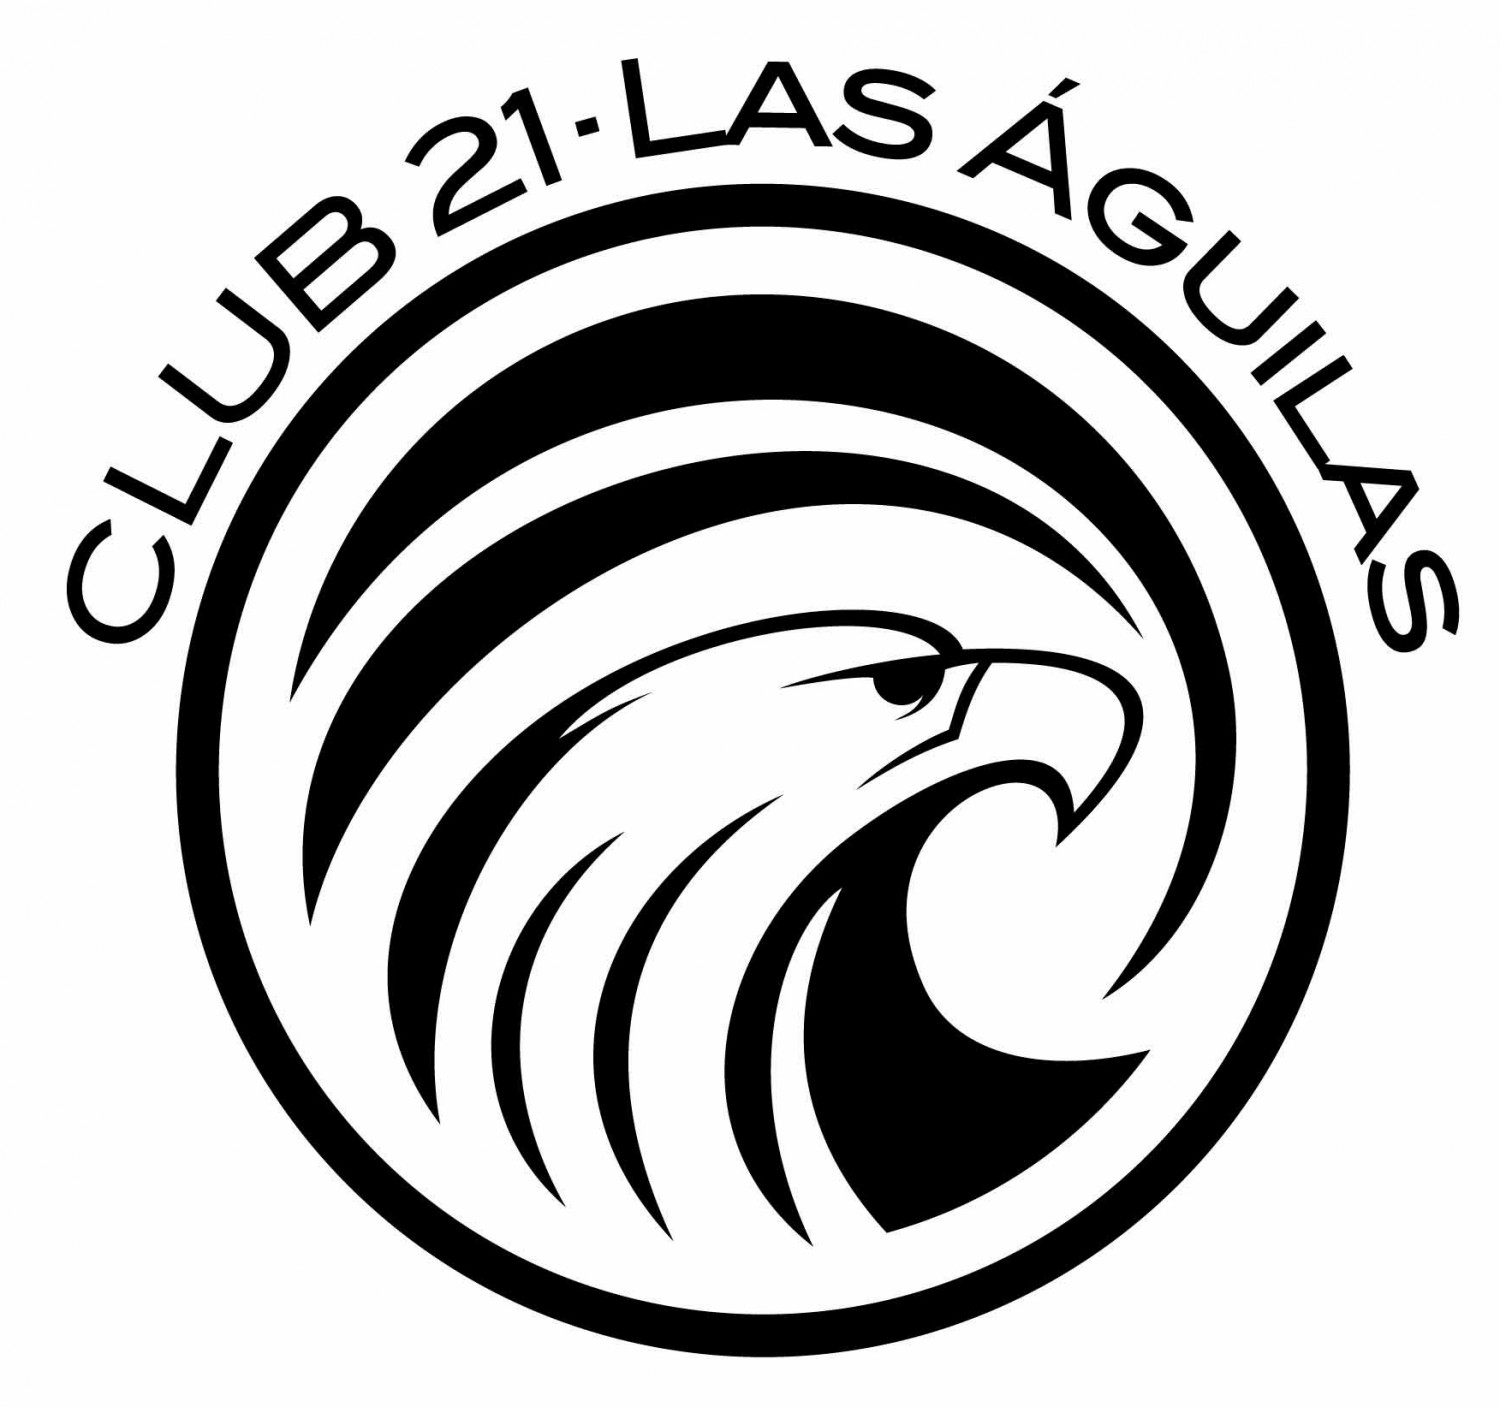 Club 21 Las Águilas 2018